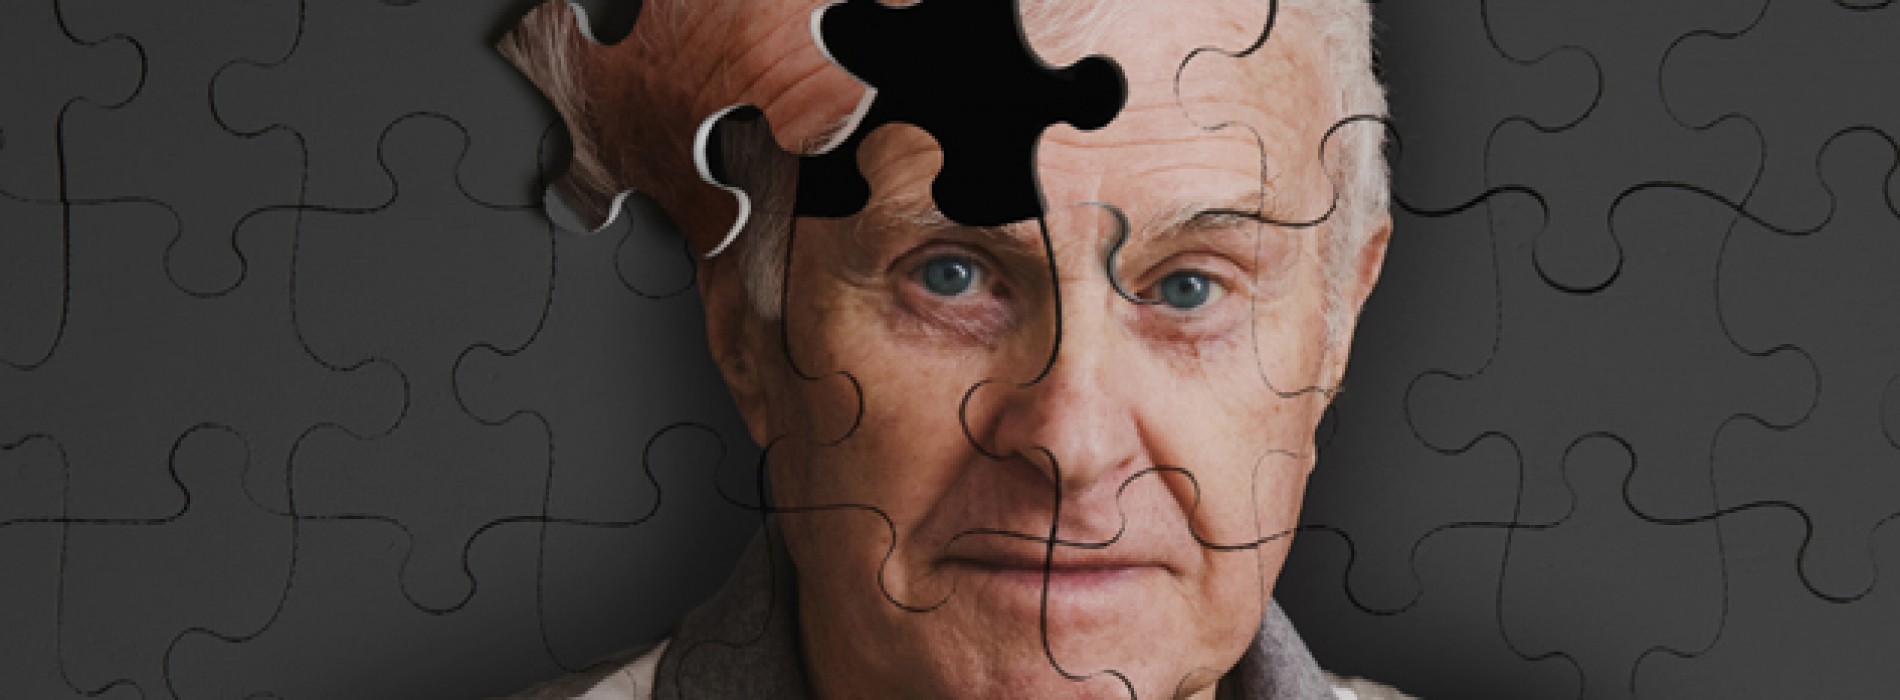 Βγήκαν τα τεστ διάγνωσης για Αλτσχάιμερ - Θέλετε σίγουρα να τα κάνετε;